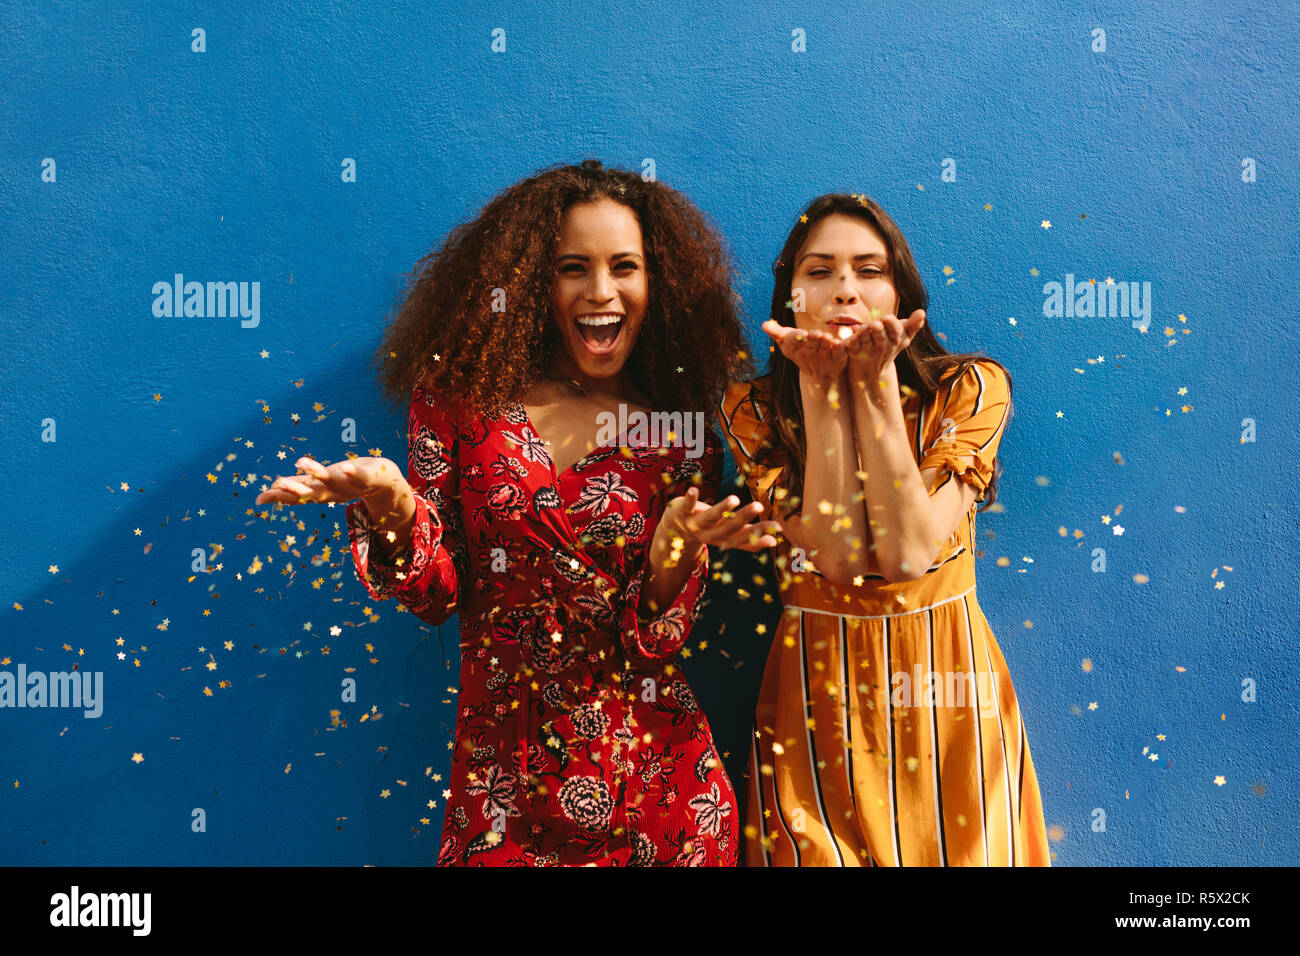 Female friends blowing off magic glitter. Les femmes excitées s'amusant contre mur bleu. Banque D'Images